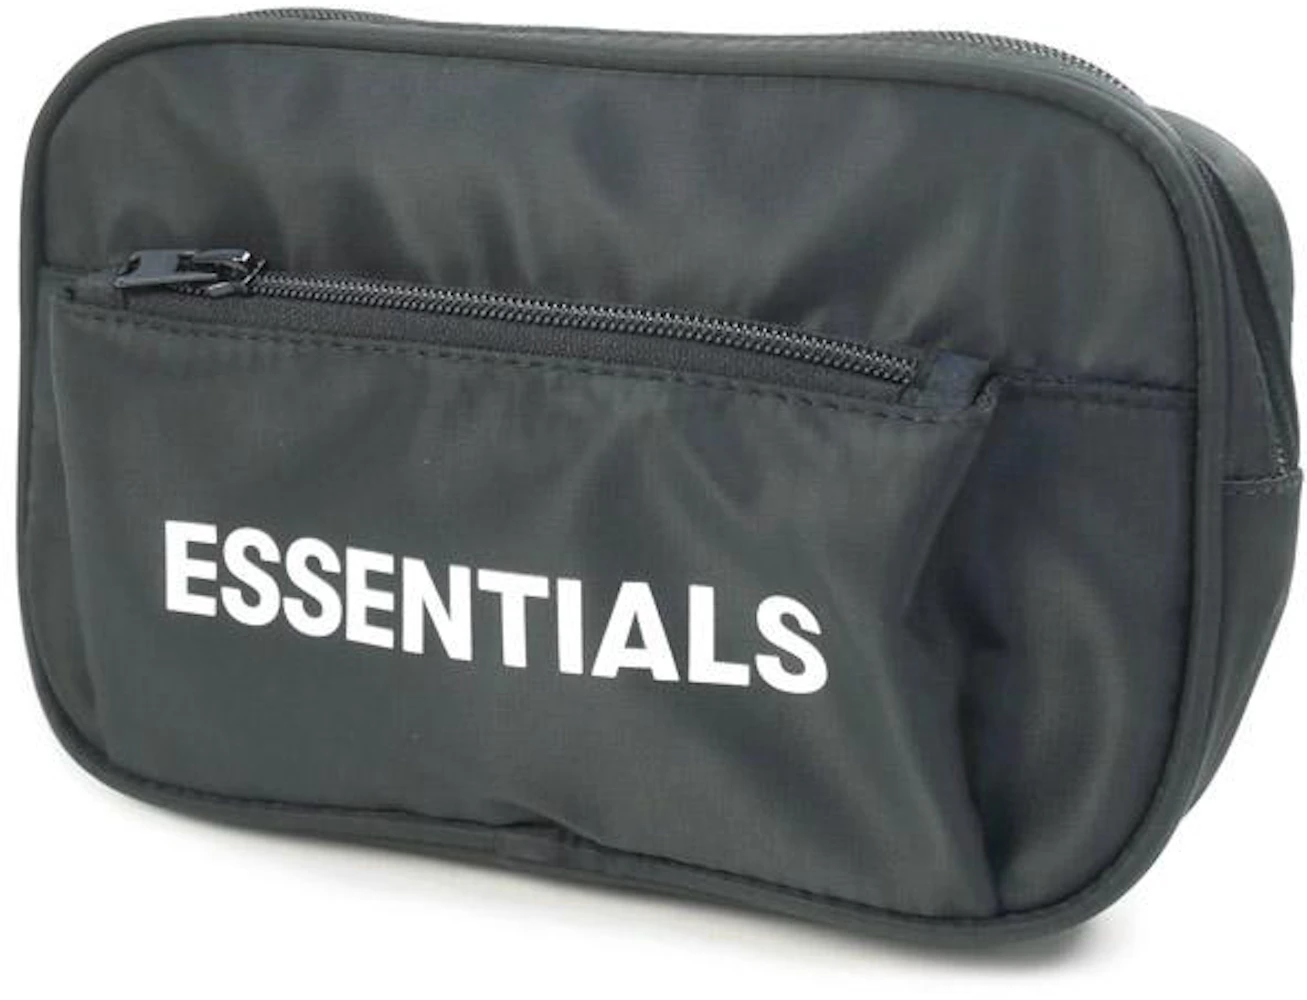 新品 FOG Essentials Crossbody Bag ウエストバッグ